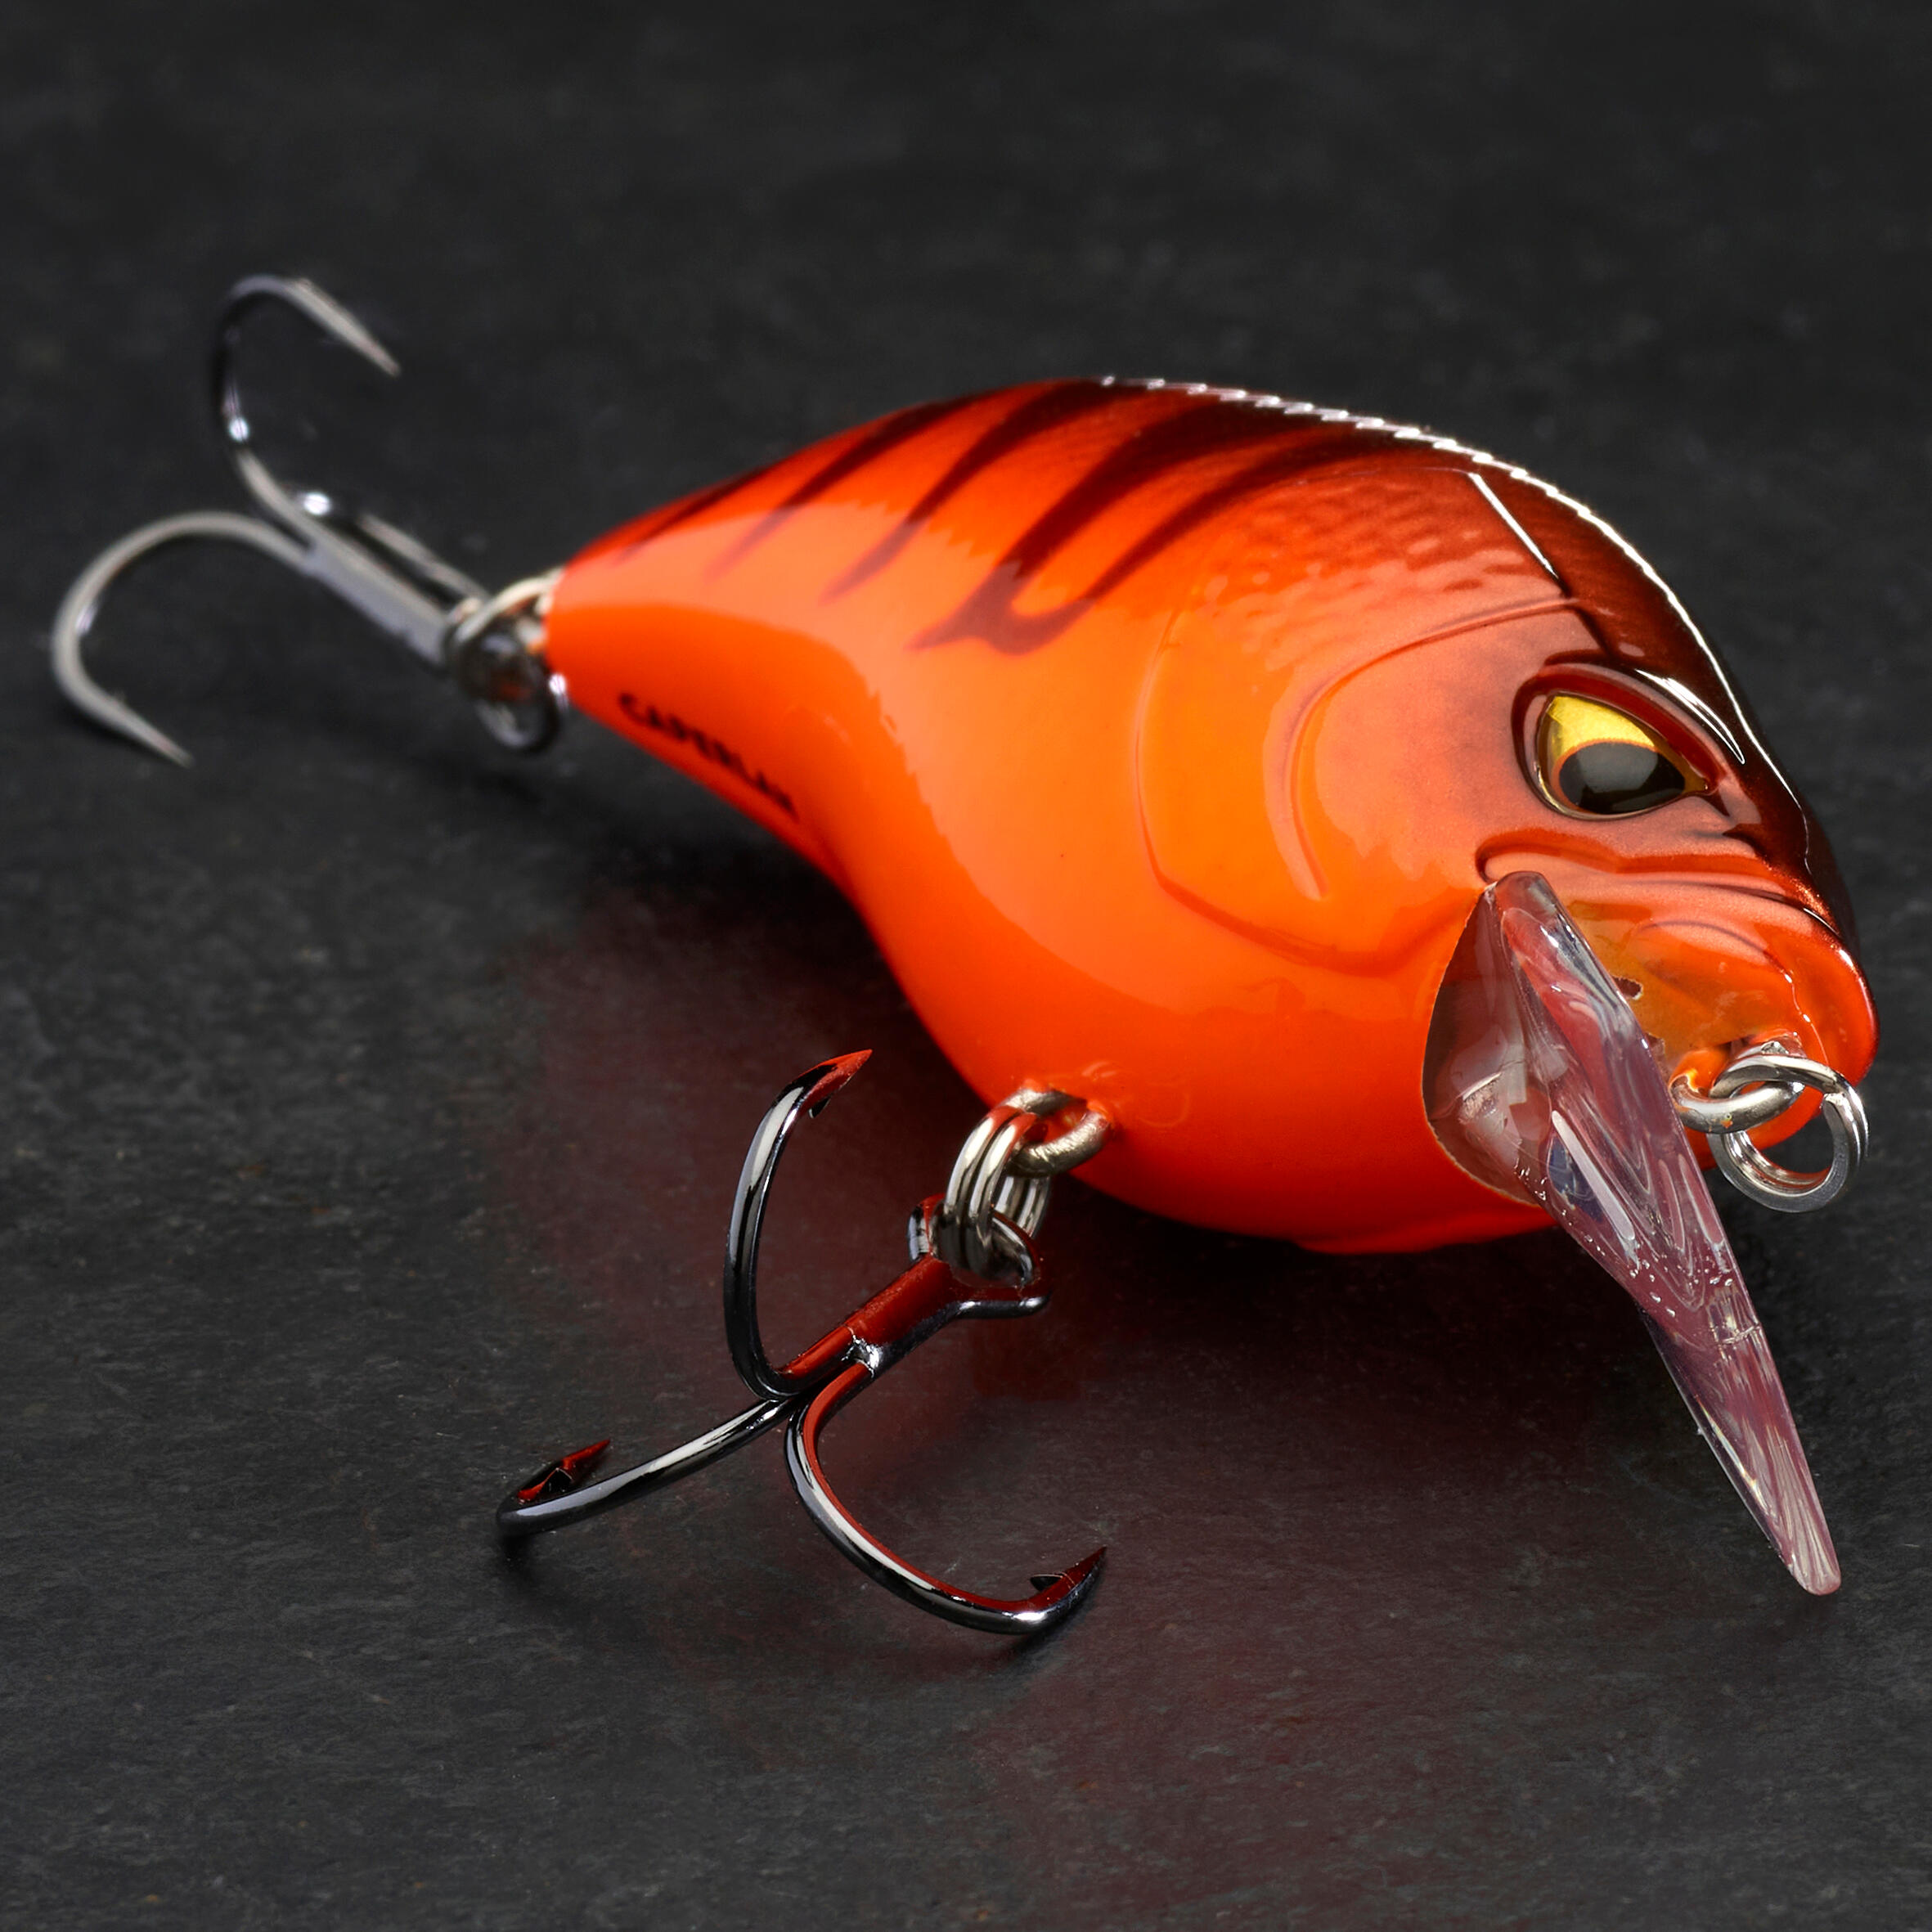 60 lure fishing crankbait - Fluo orange, black - Caperlan - Decathlon